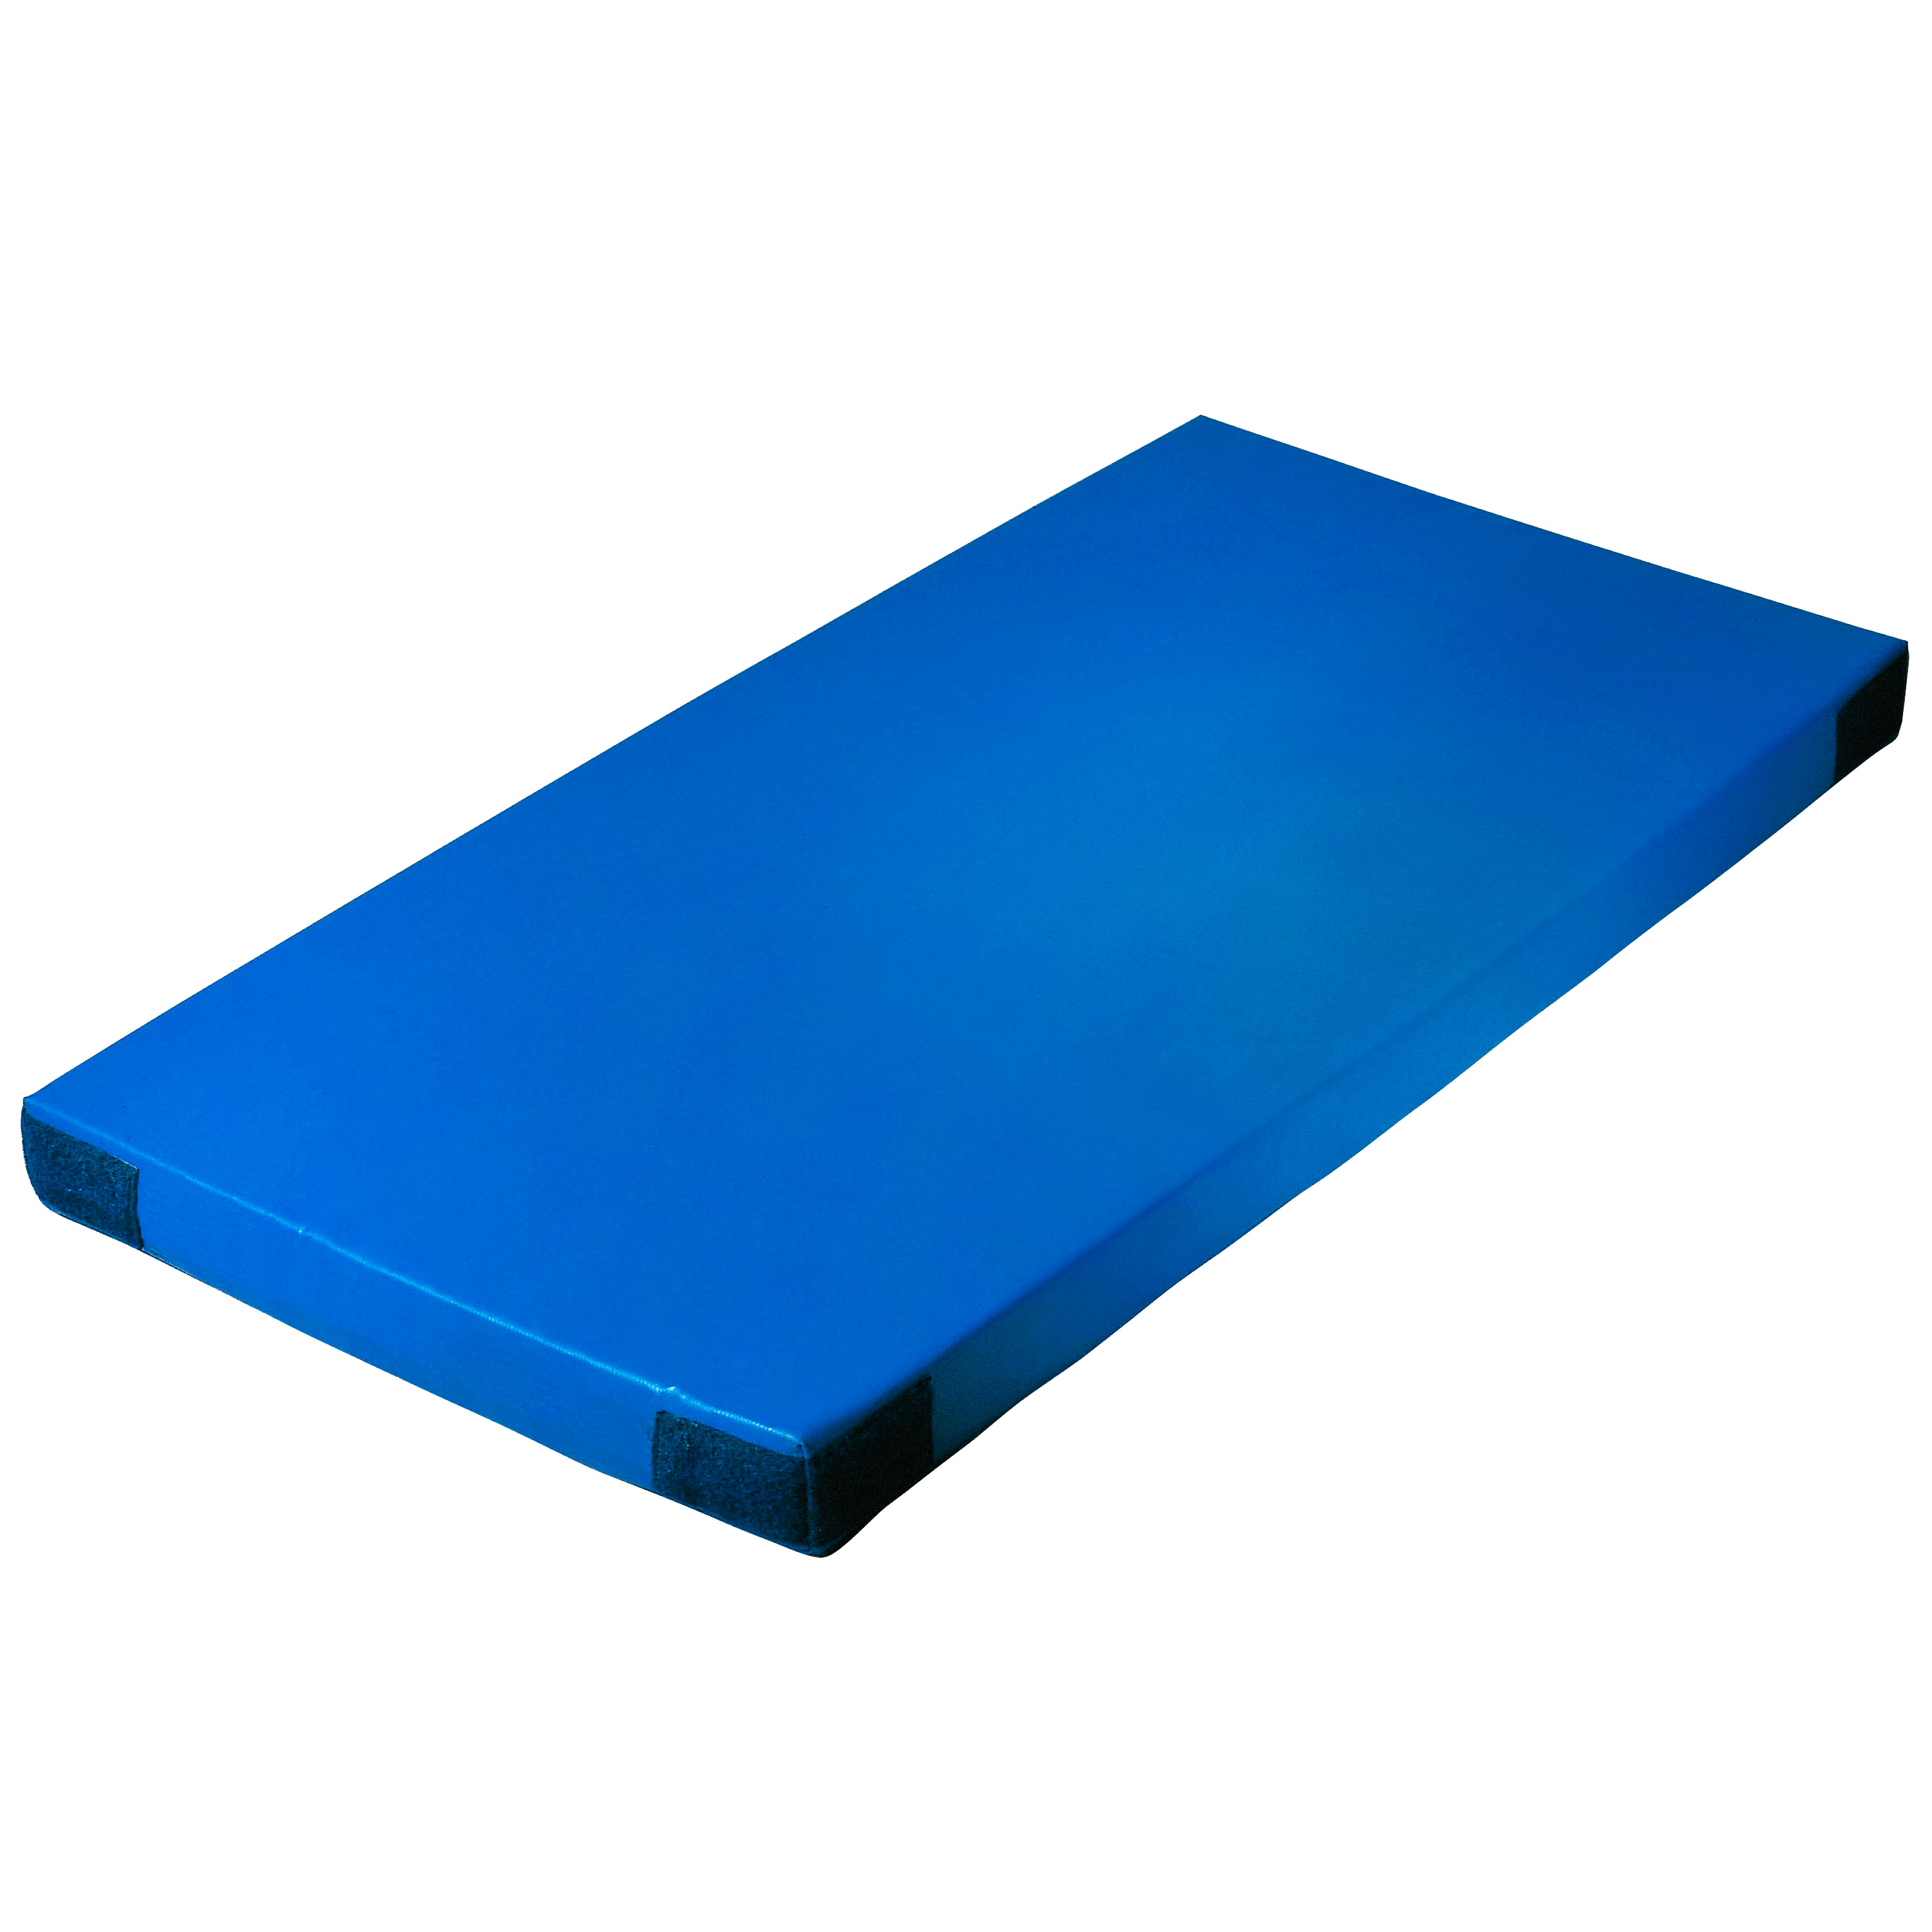 Super-Leichtturnmatte Klettecken 150 x 100 x 8 cm, blau